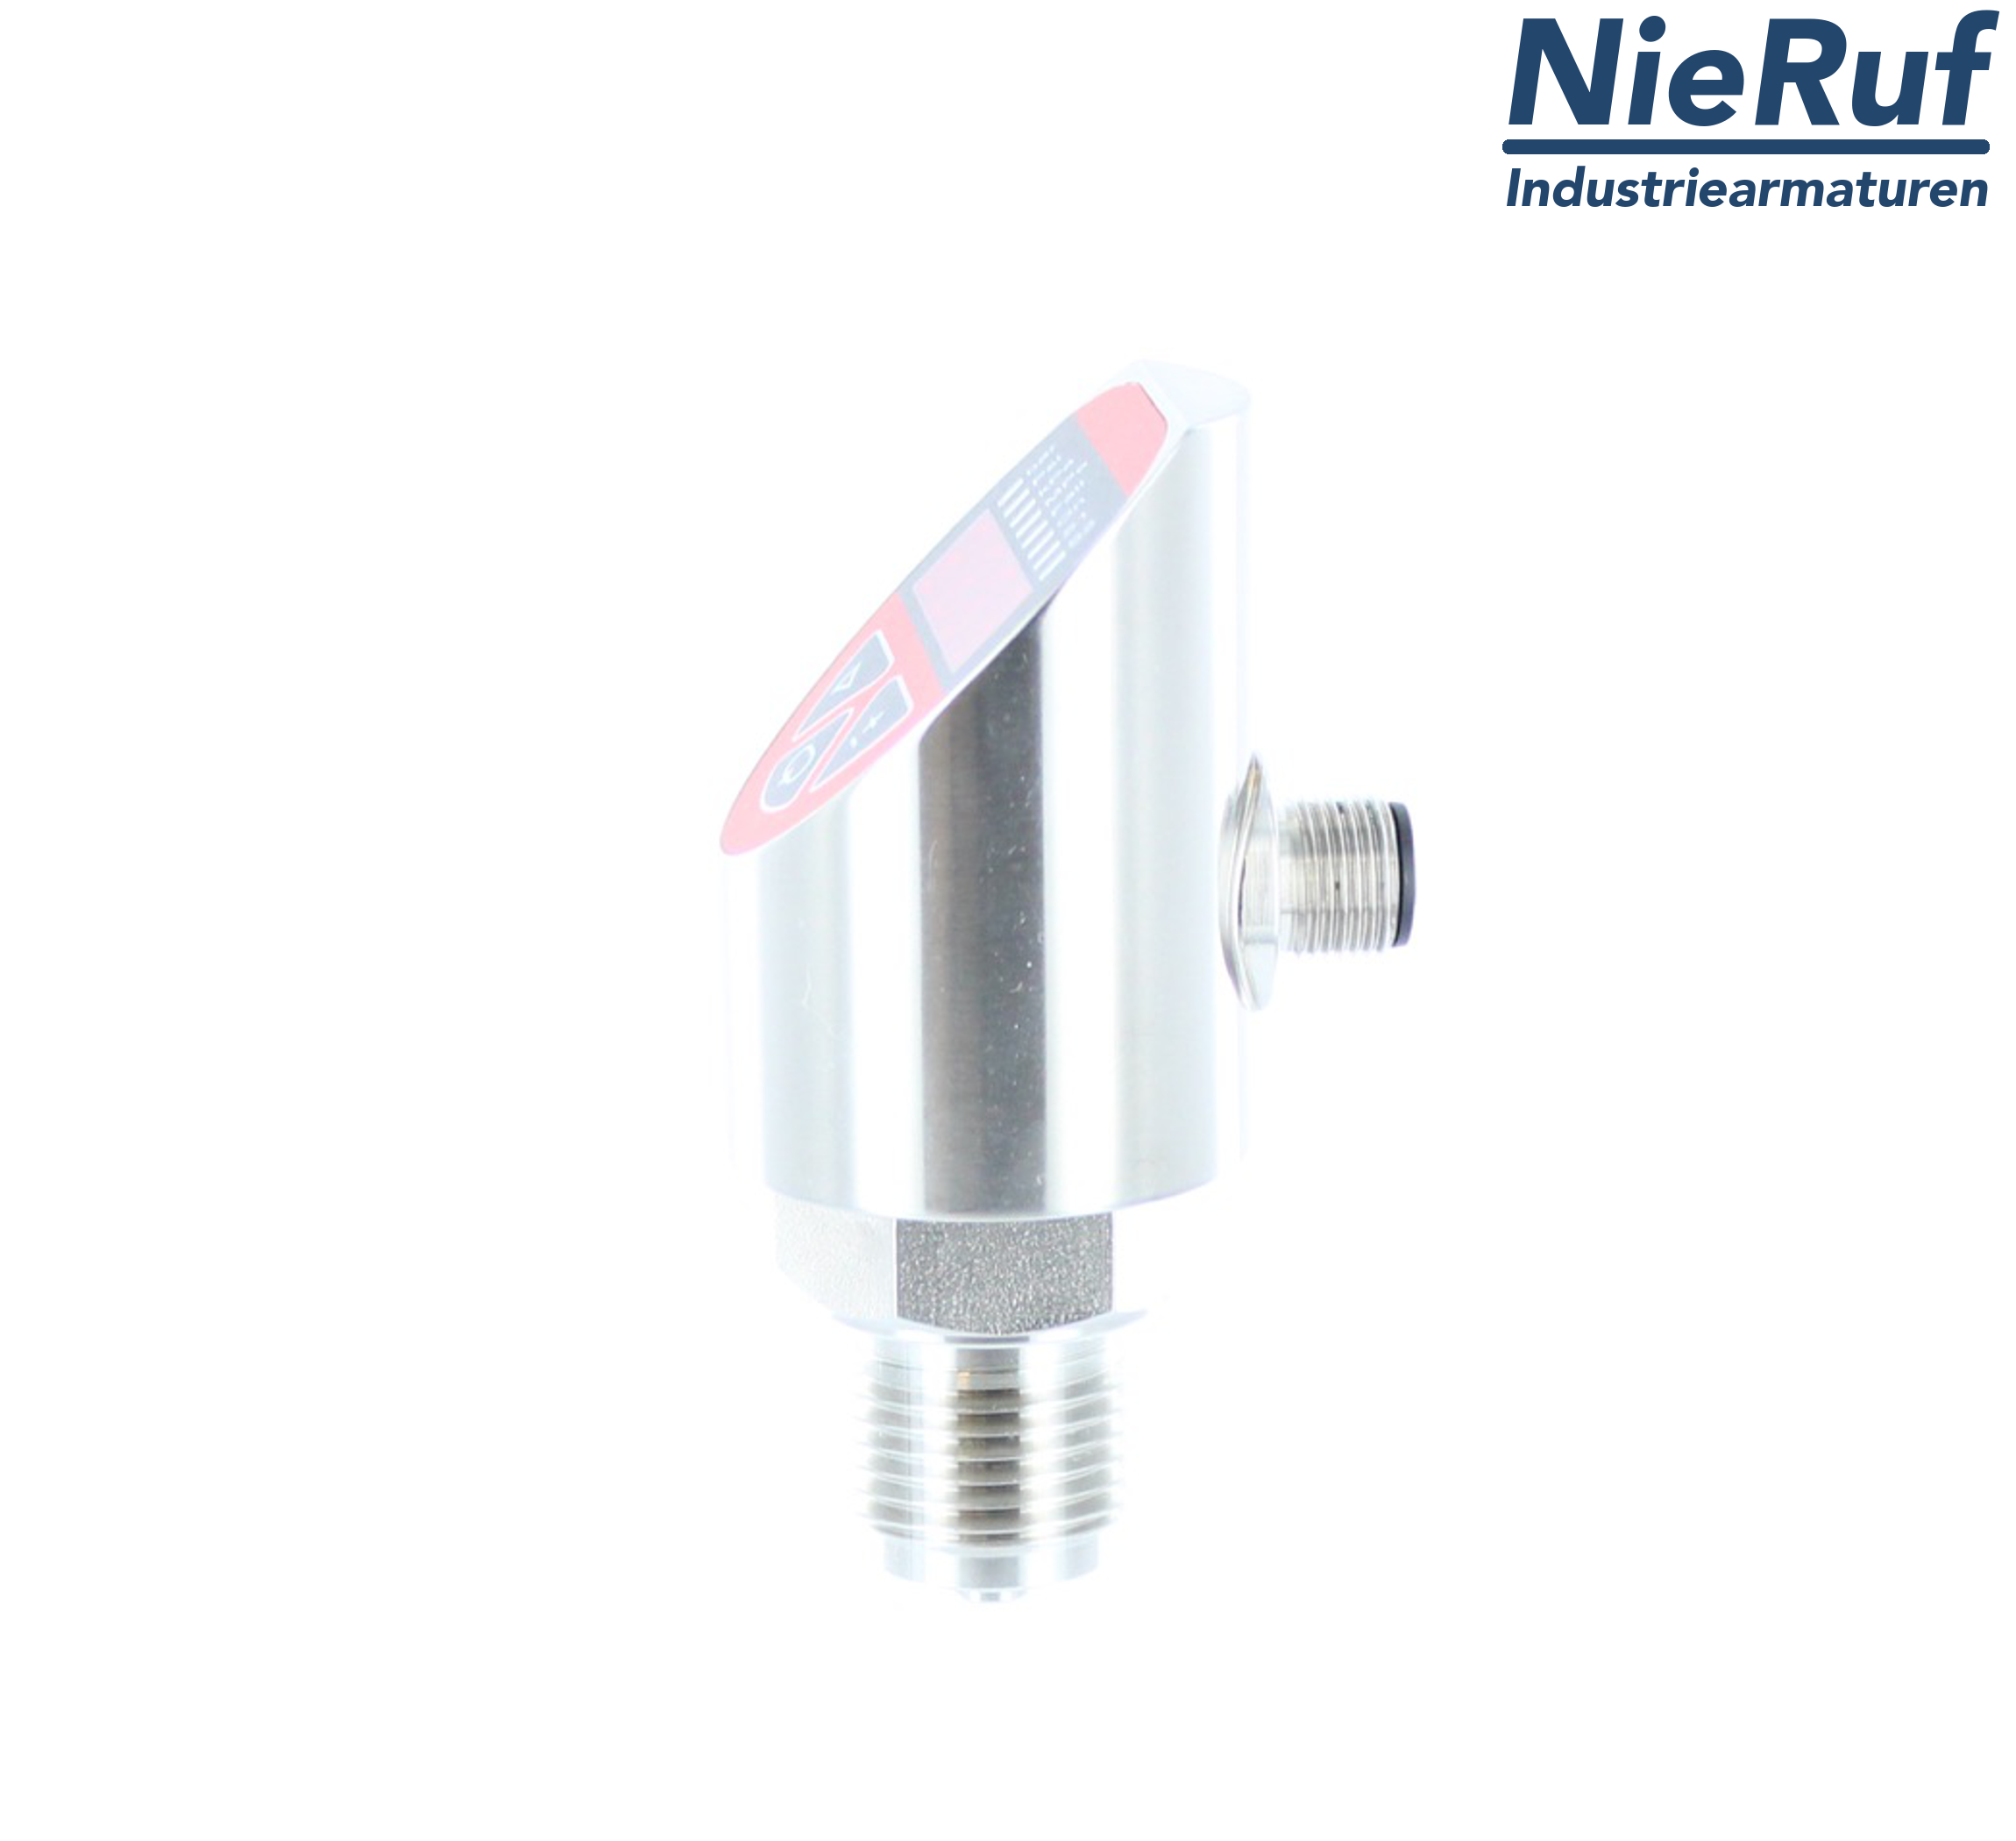 digital pressure sensor G 1/2" B 5-wire: 2xPNP, 1x4 - 20mA FPM 0,0 - 250,0 bar